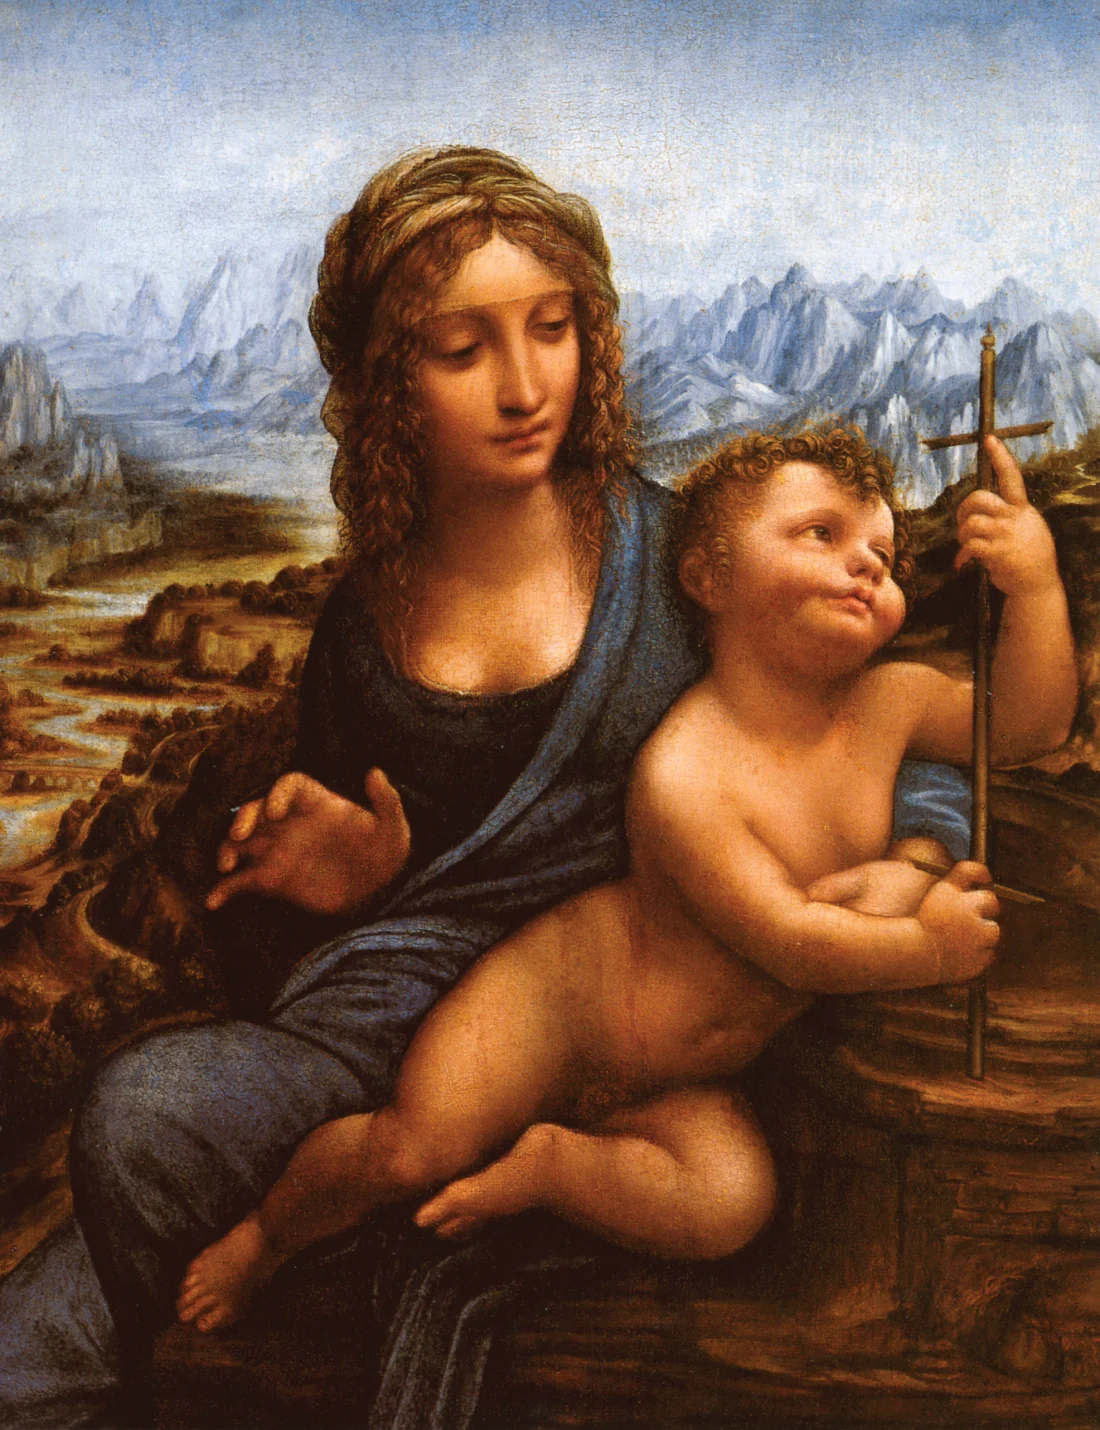 10-те най-известни картини на Леонардо да Винчи